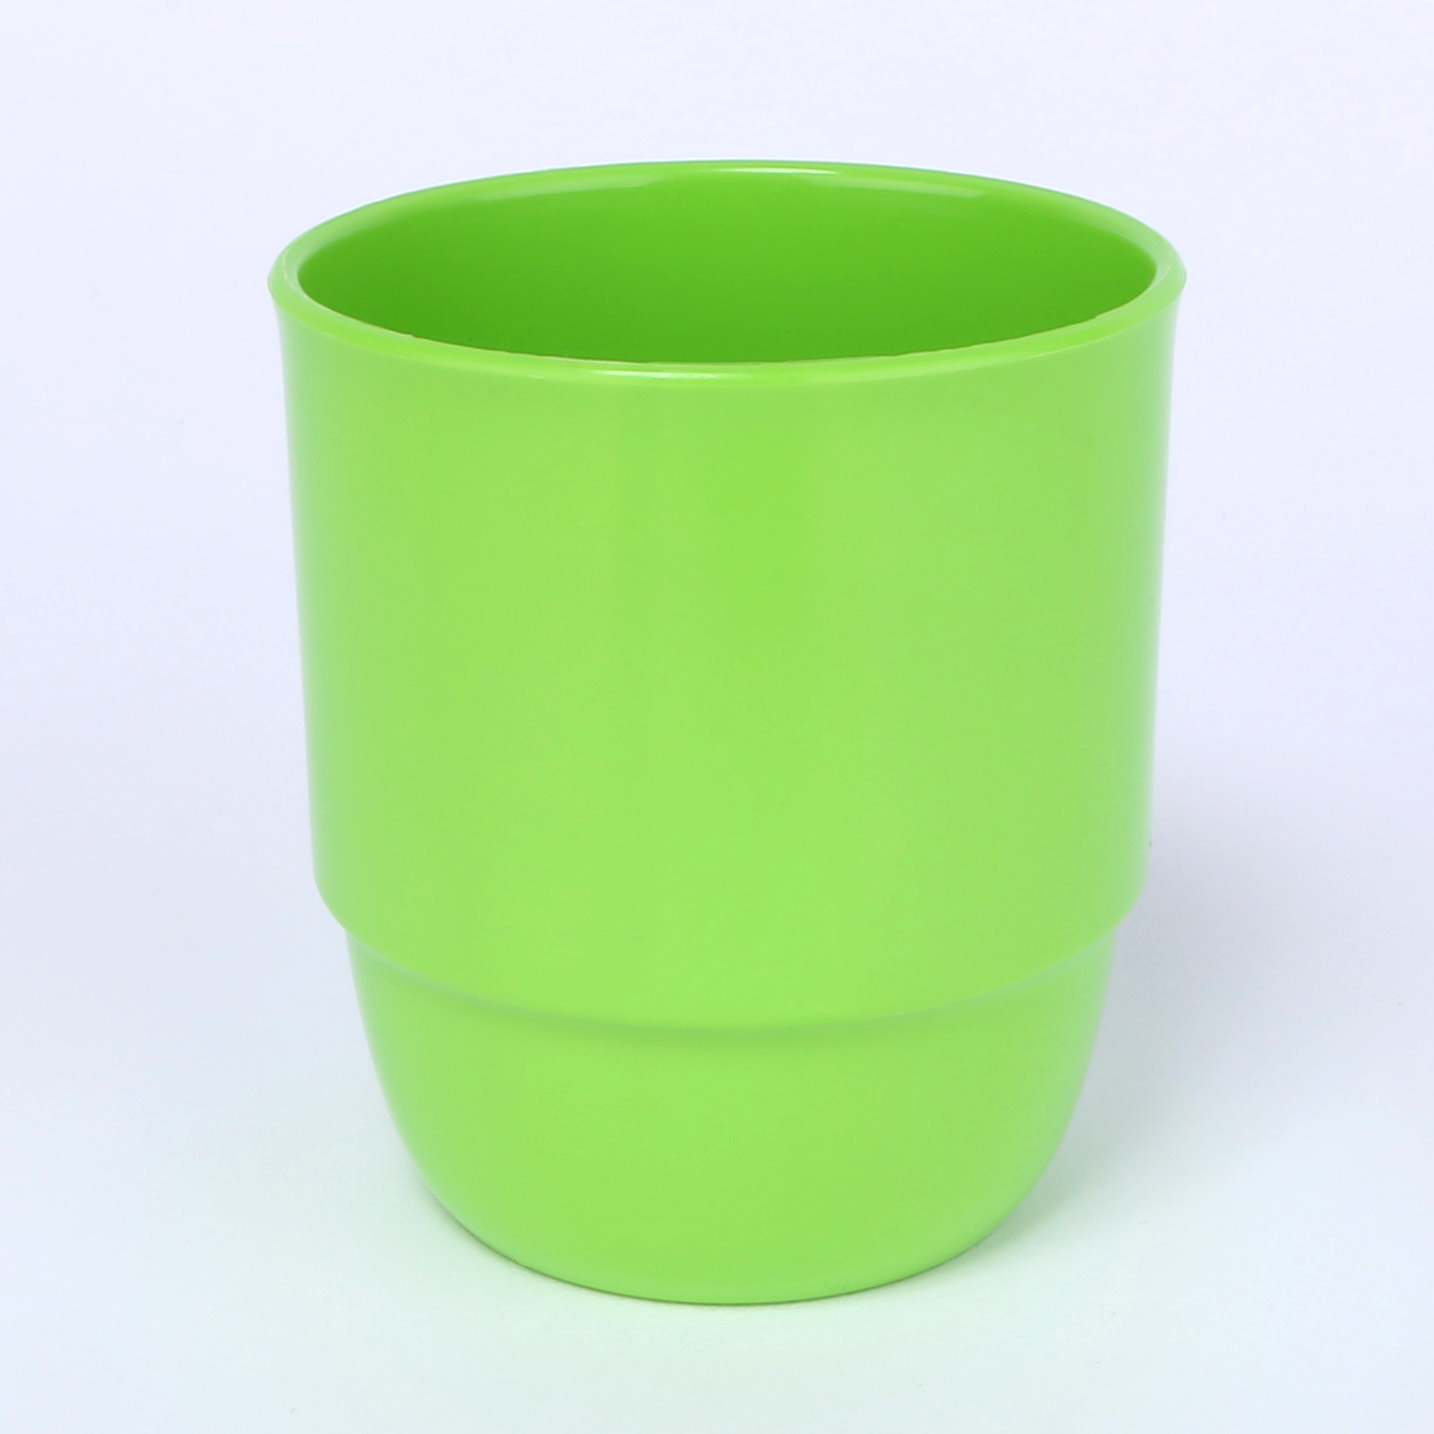 Trinkbecher Zephyr ohne Henkel 0,25 L aus schadstofffreiem Kunststoff in der Farbe grasgrün.